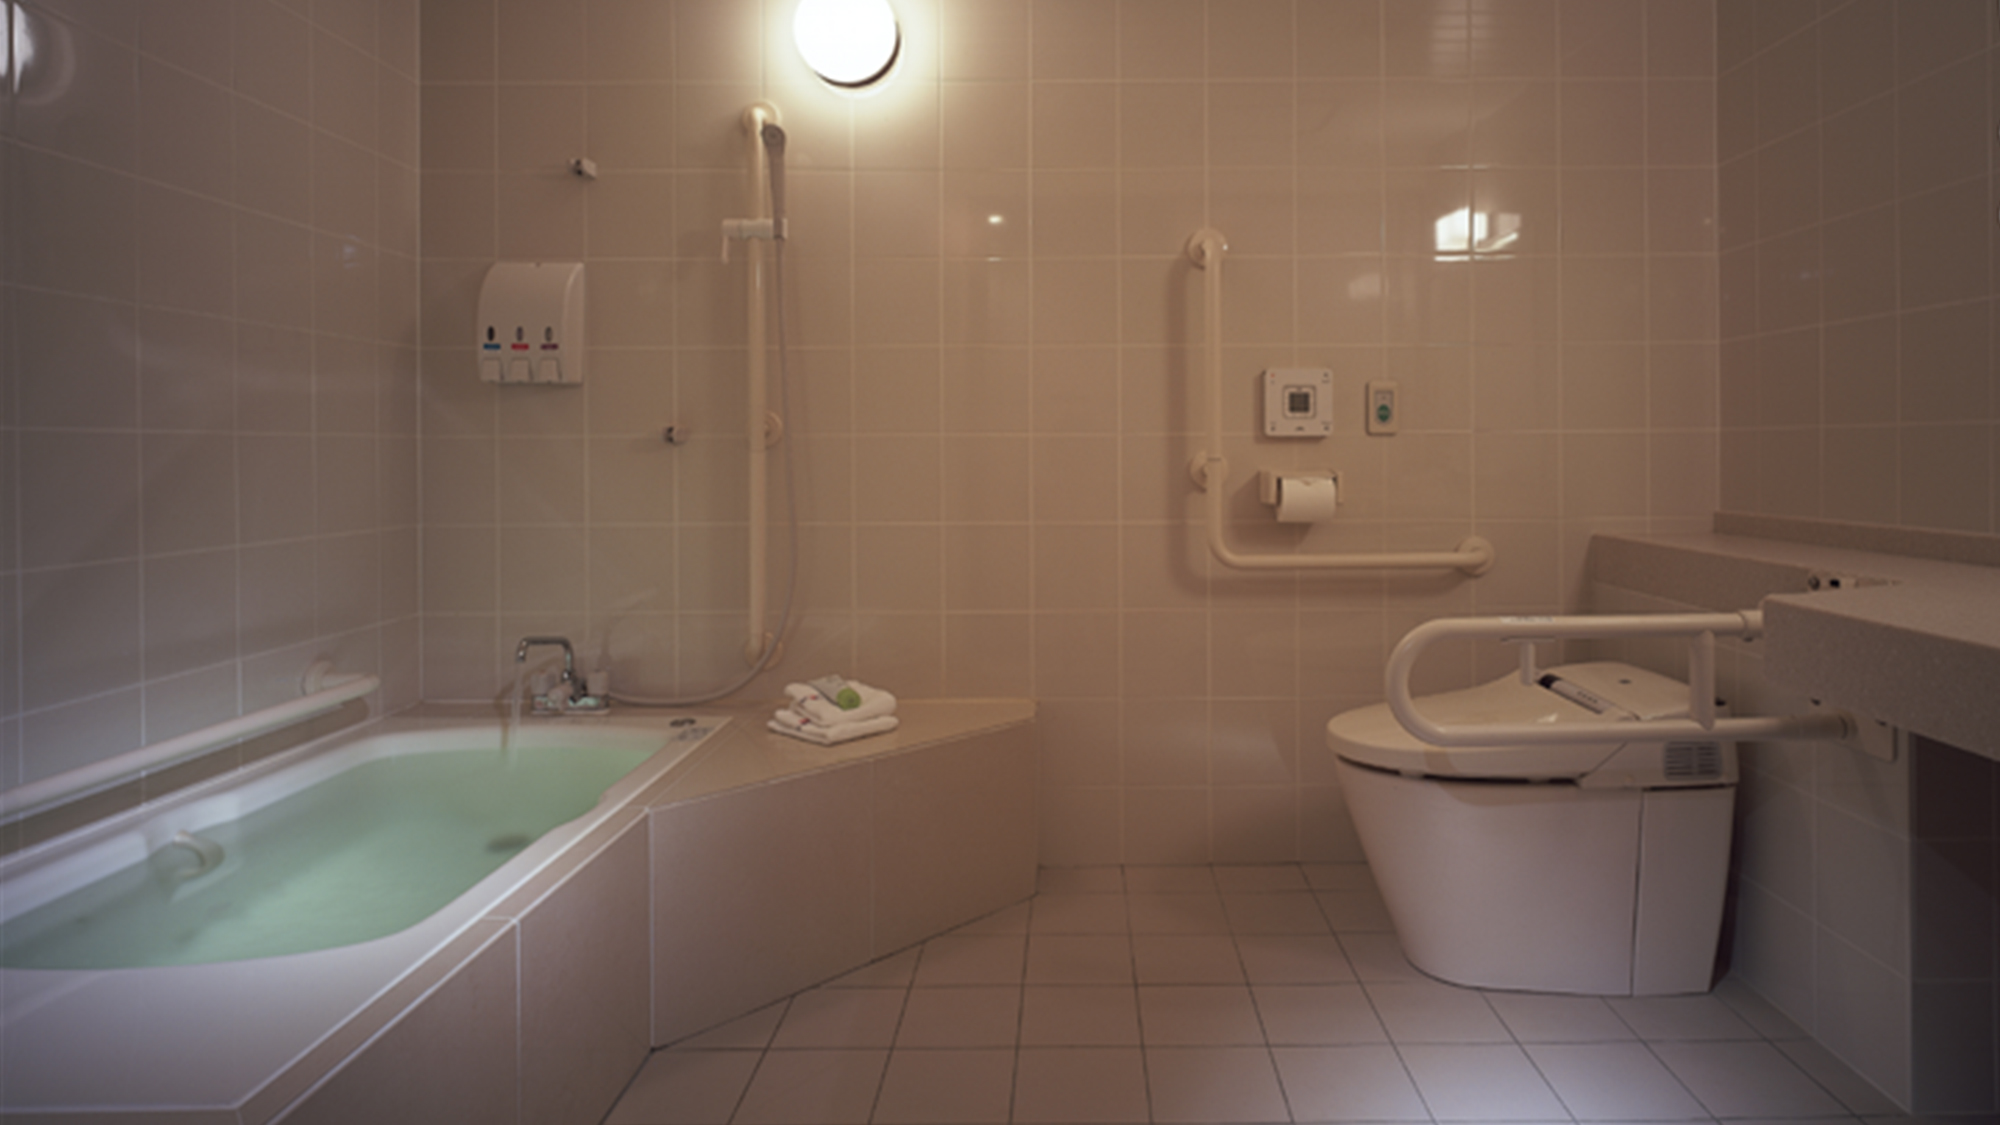 【ユニバーサルデザインルーム】バスルームも段差はなく広めの浴室内です。